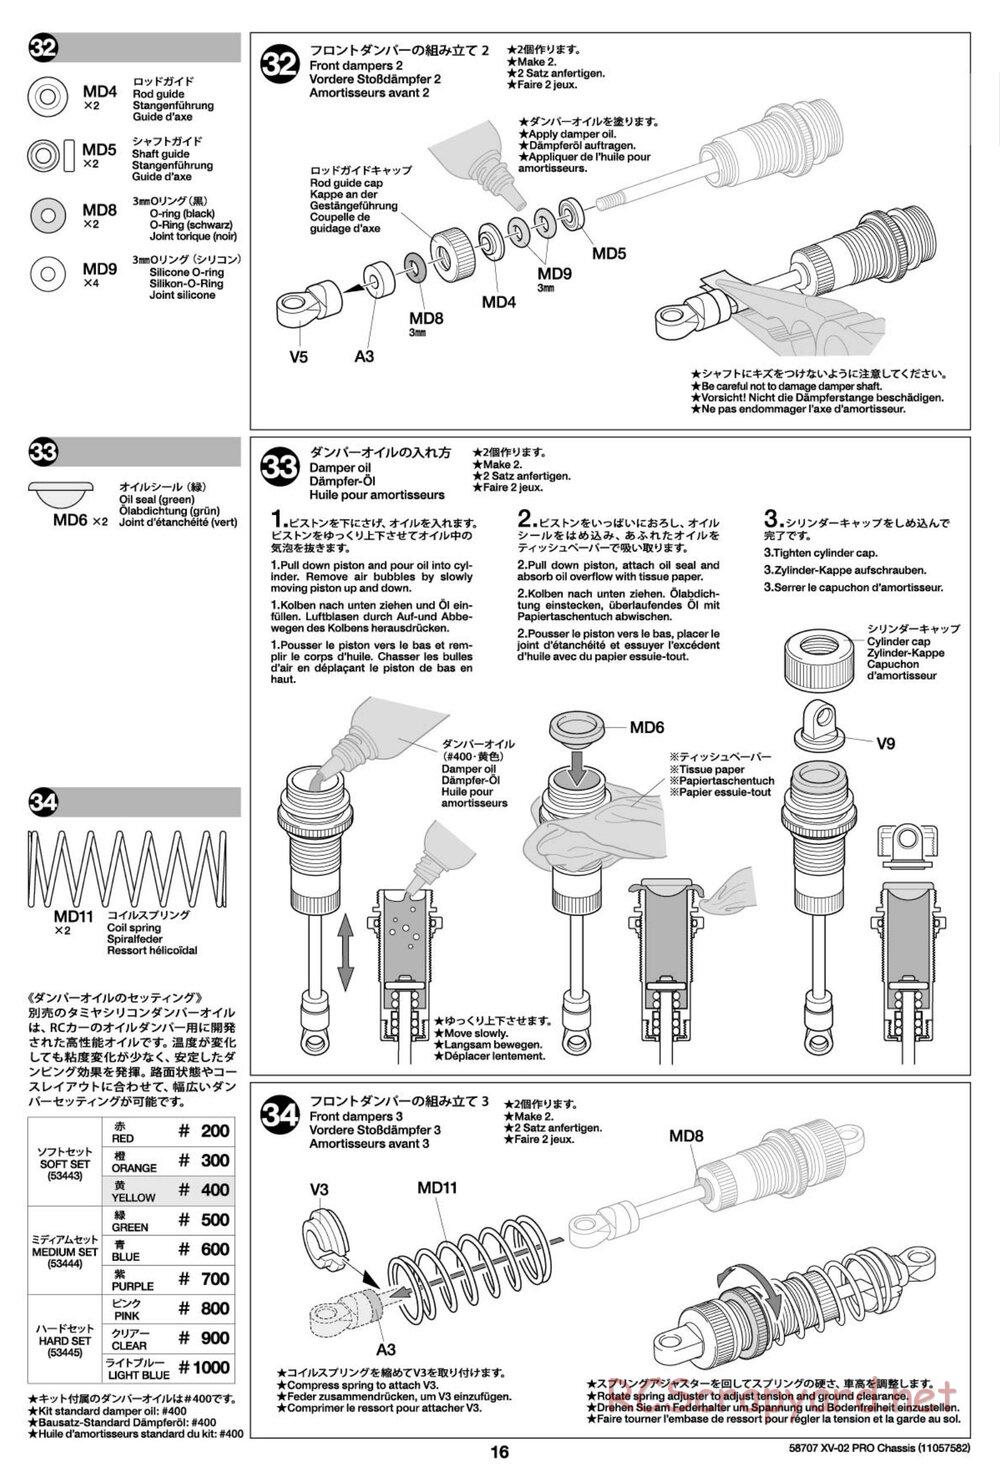 Tamiya - XV-02 Pro Chassis - Manual - Page 16